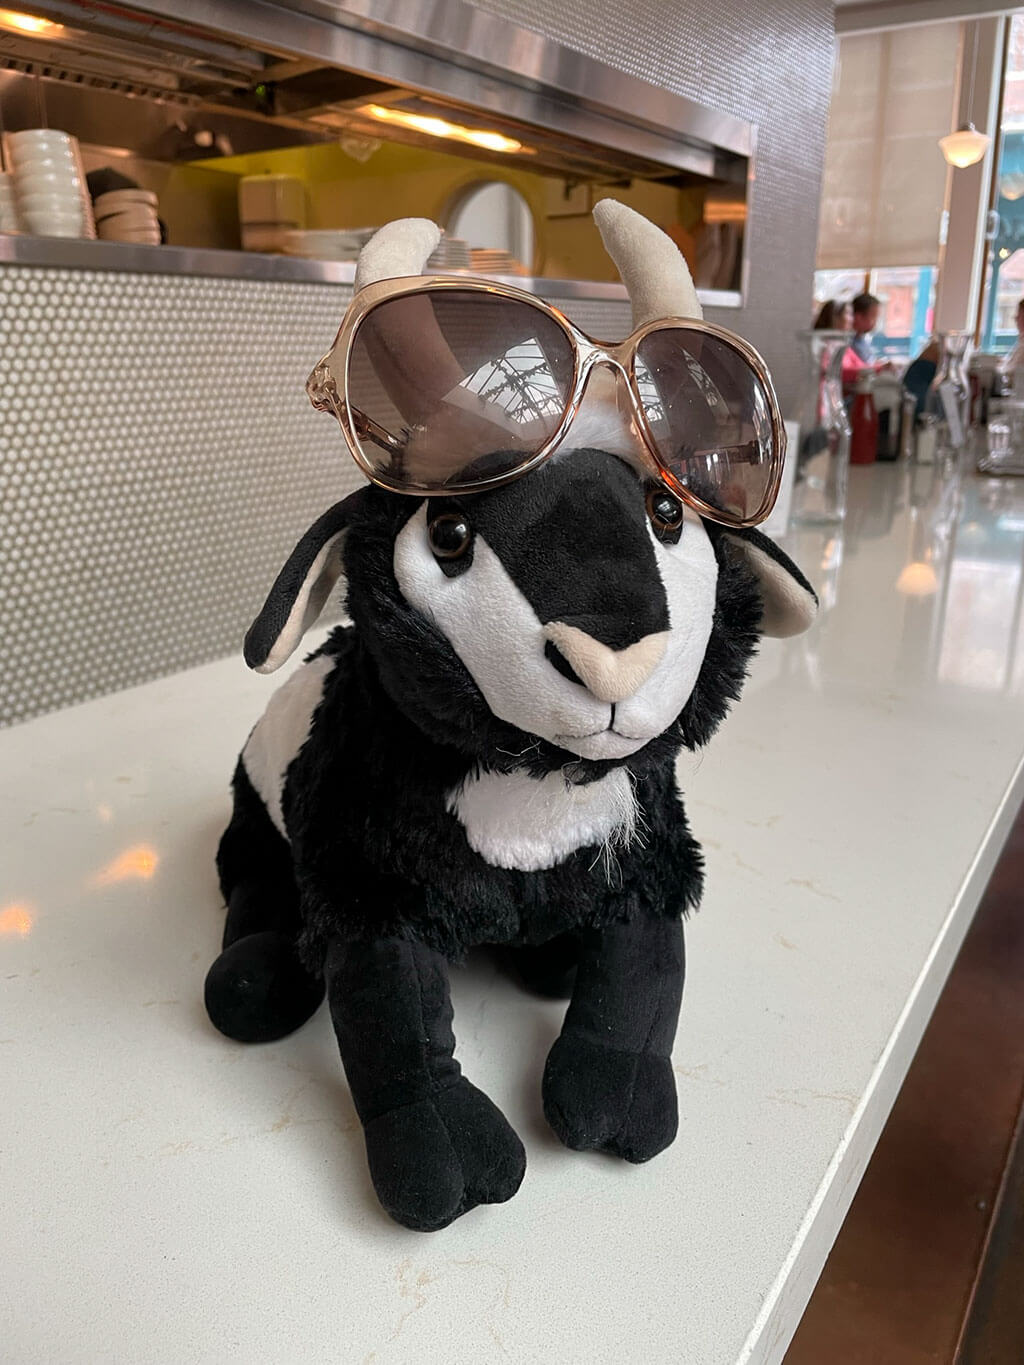 drive-swim-fly-chicago-illinois-little-goat-diner-breakfast-brunch-black-goat-stuffed-animal